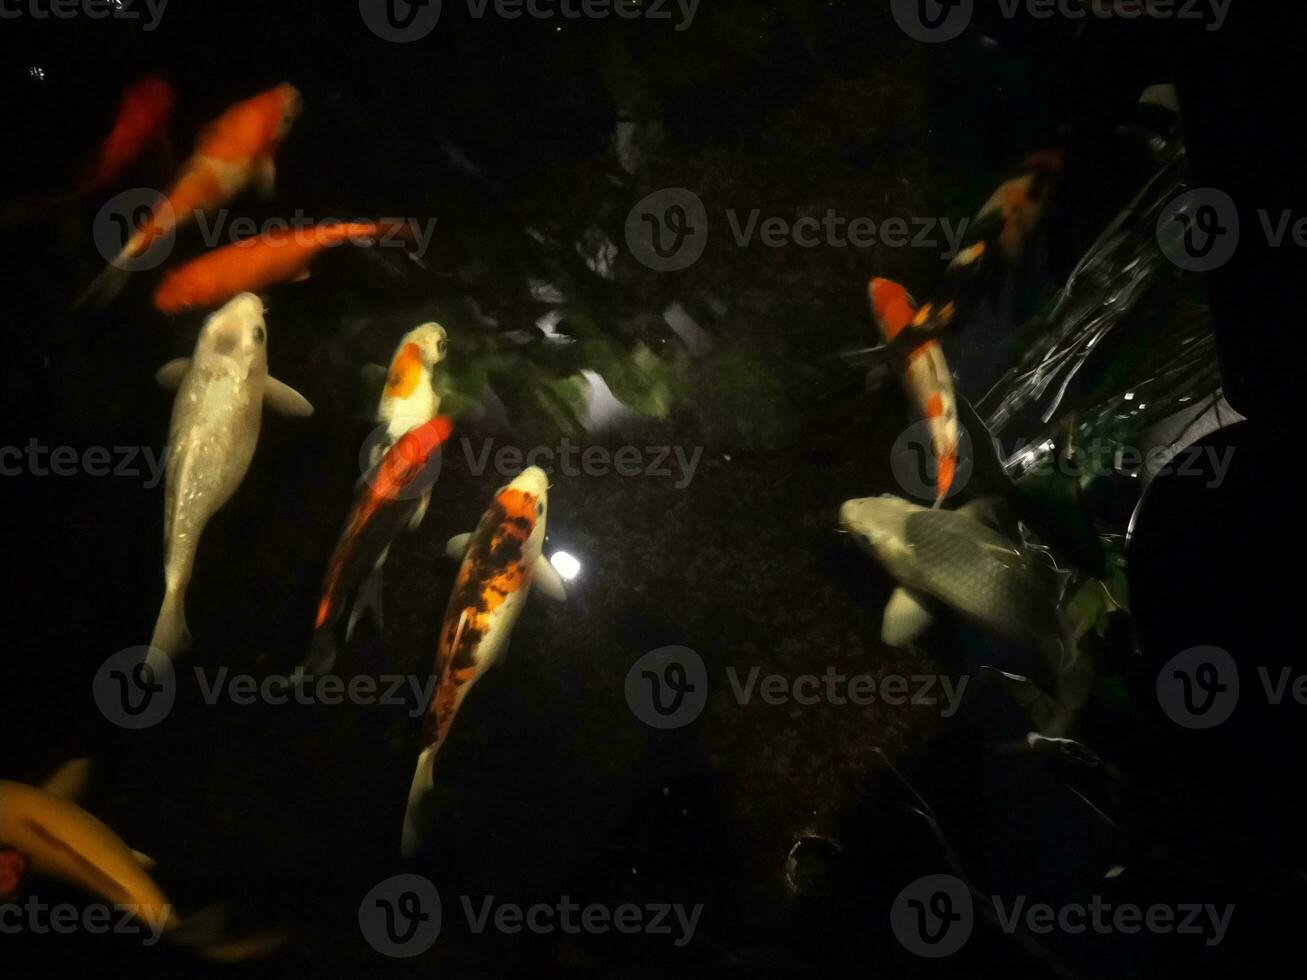 koi peixe uma iniciante guia para escolher, alimentar e mantendo seu colorida lagoa animais de estimação foto